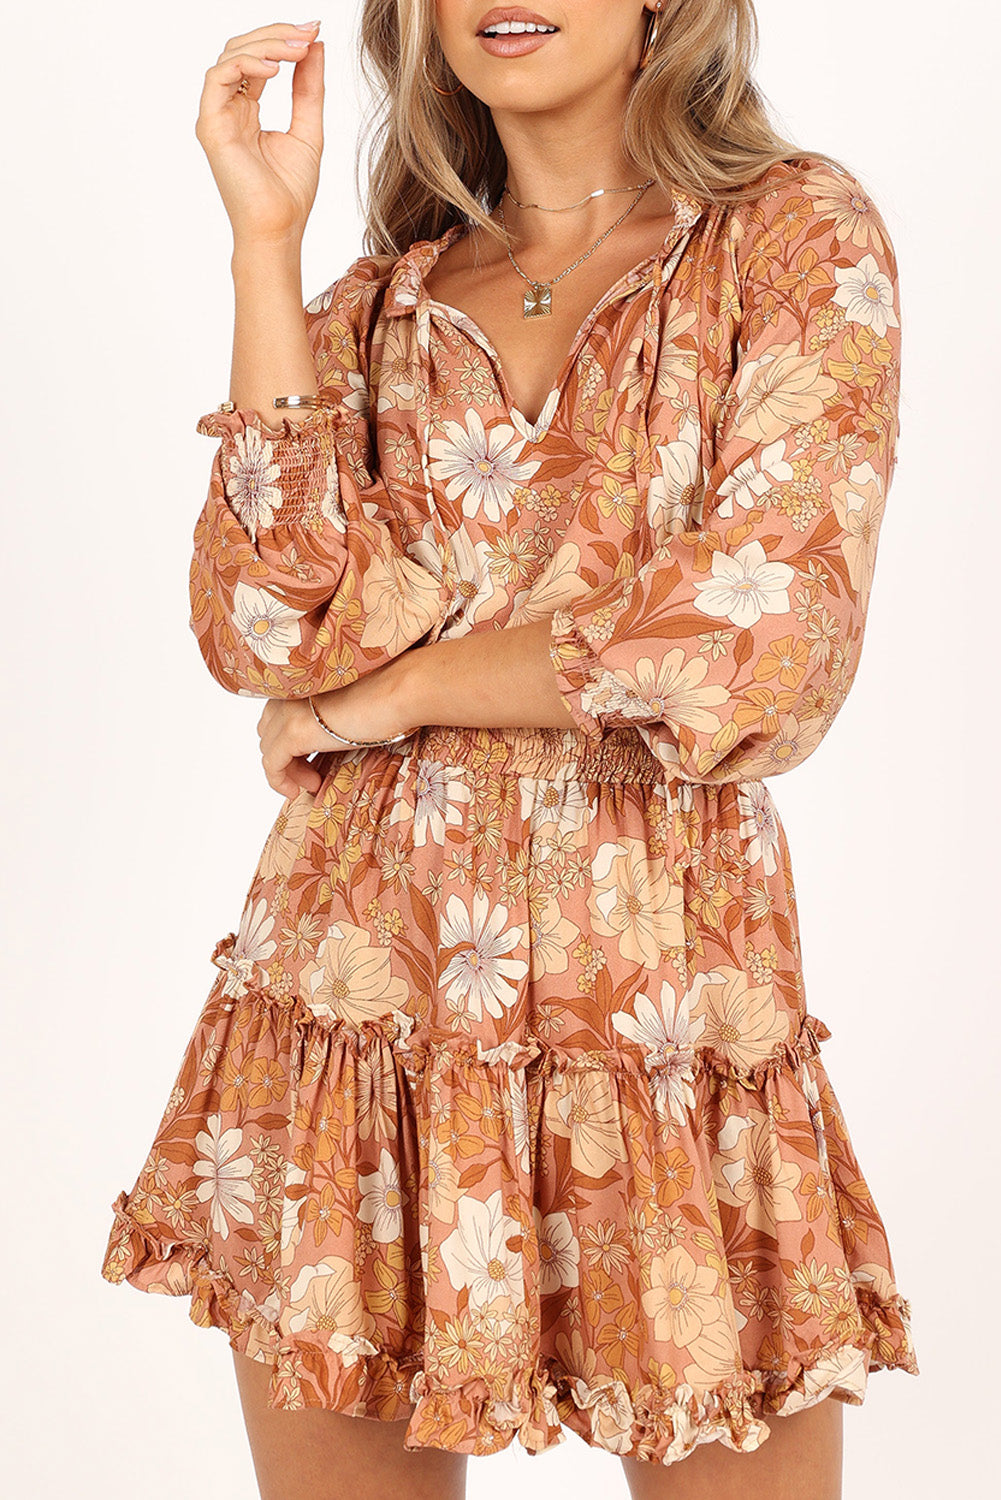 Kamelfarbenes, geblümtes Tunika-Kleid mit Schnürung und geteiltem Ausschnitt